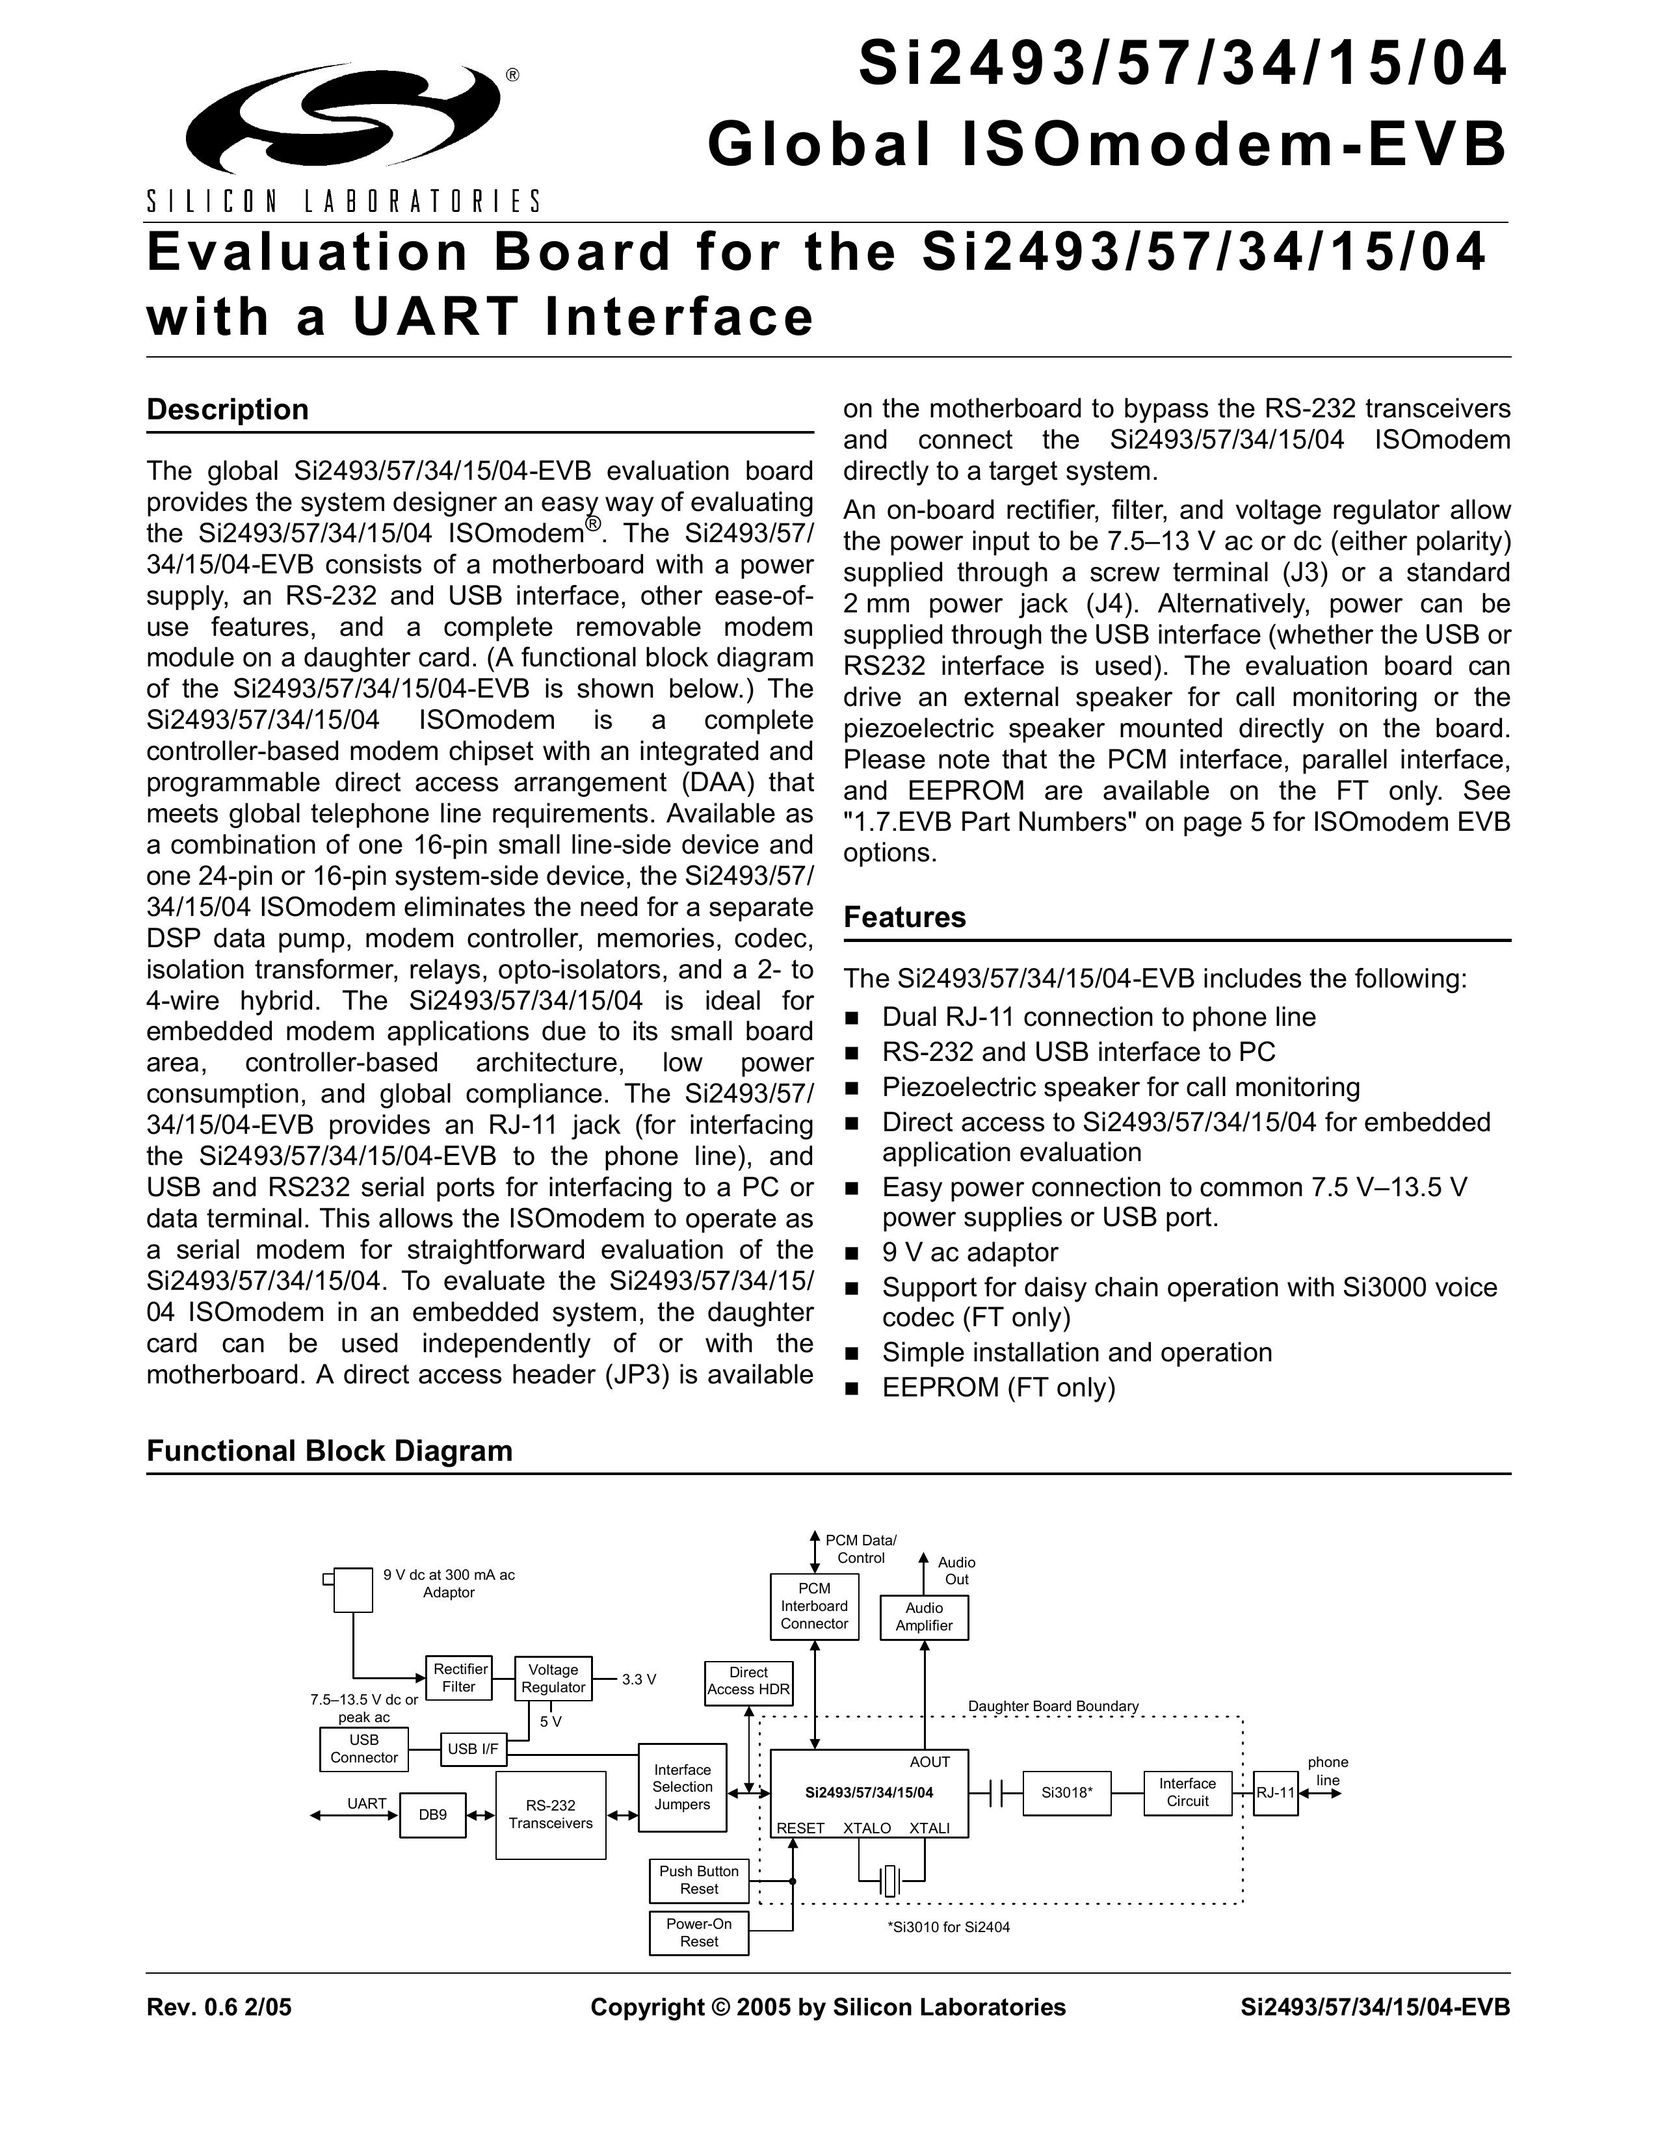 Silicon Laboratories SI2493/57/34/15/04 Modem User Manual